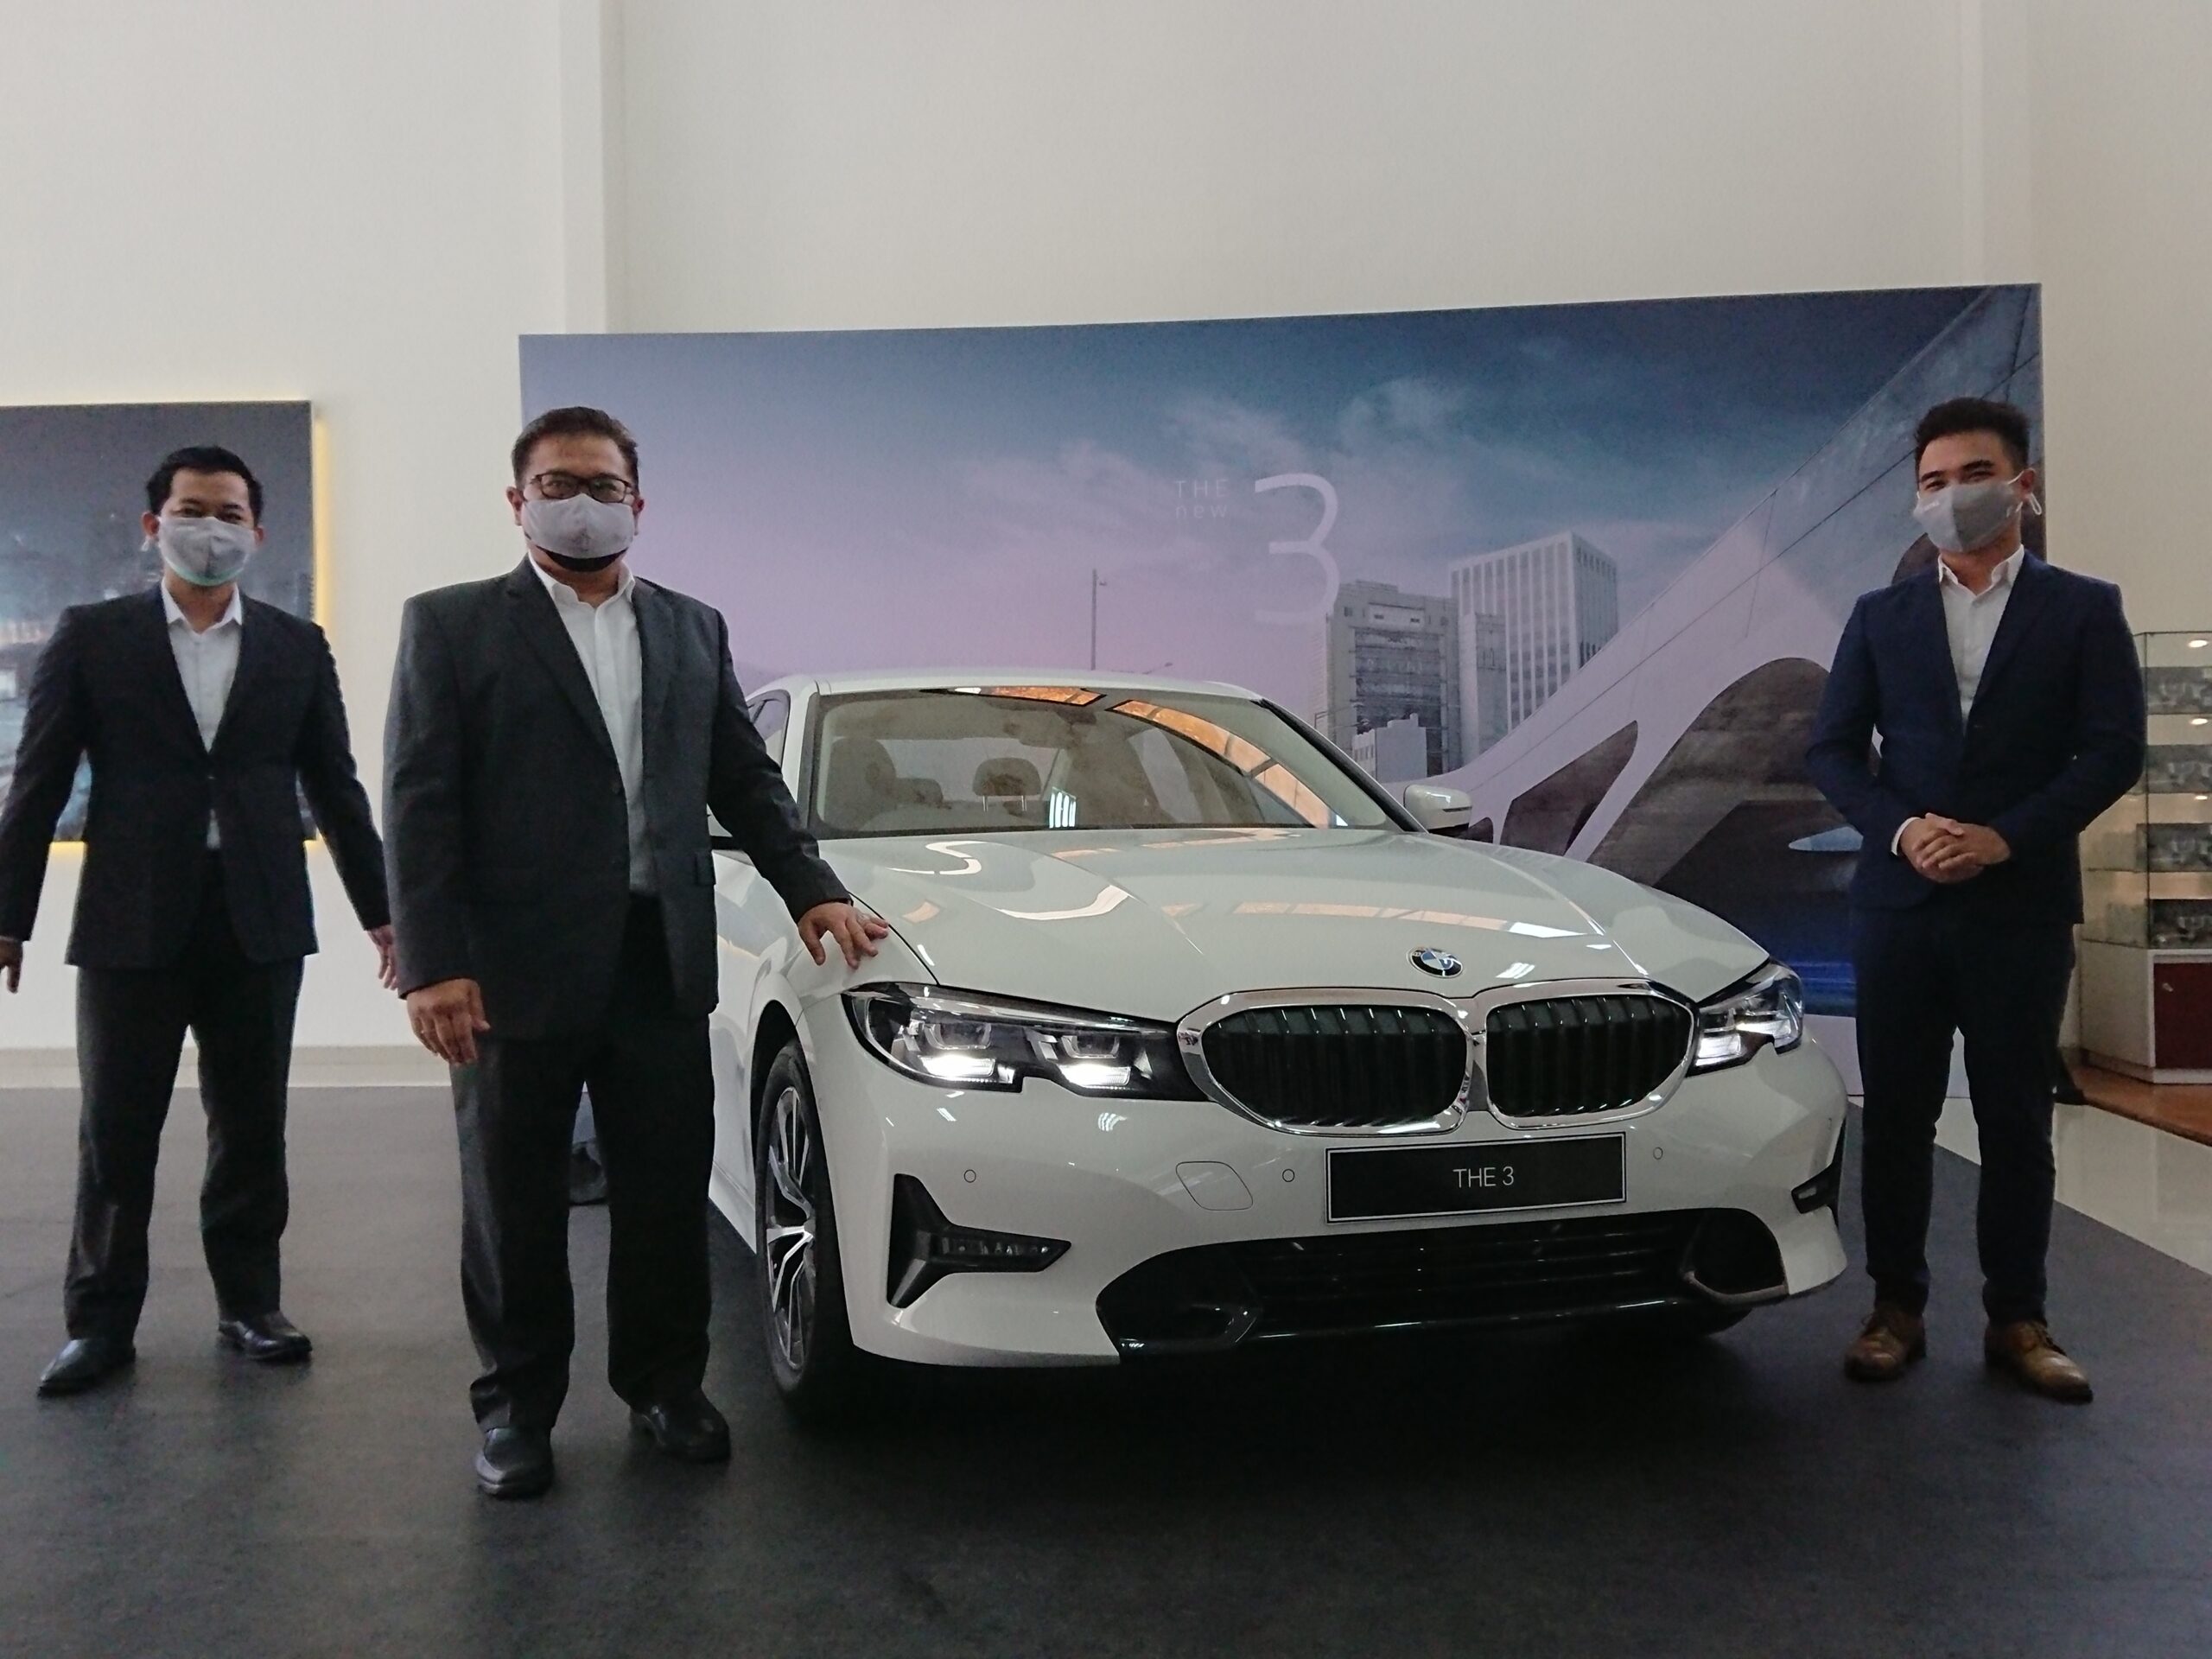 Harga Terjangkau, BMW Kenalkan Seri 320i Dynamic